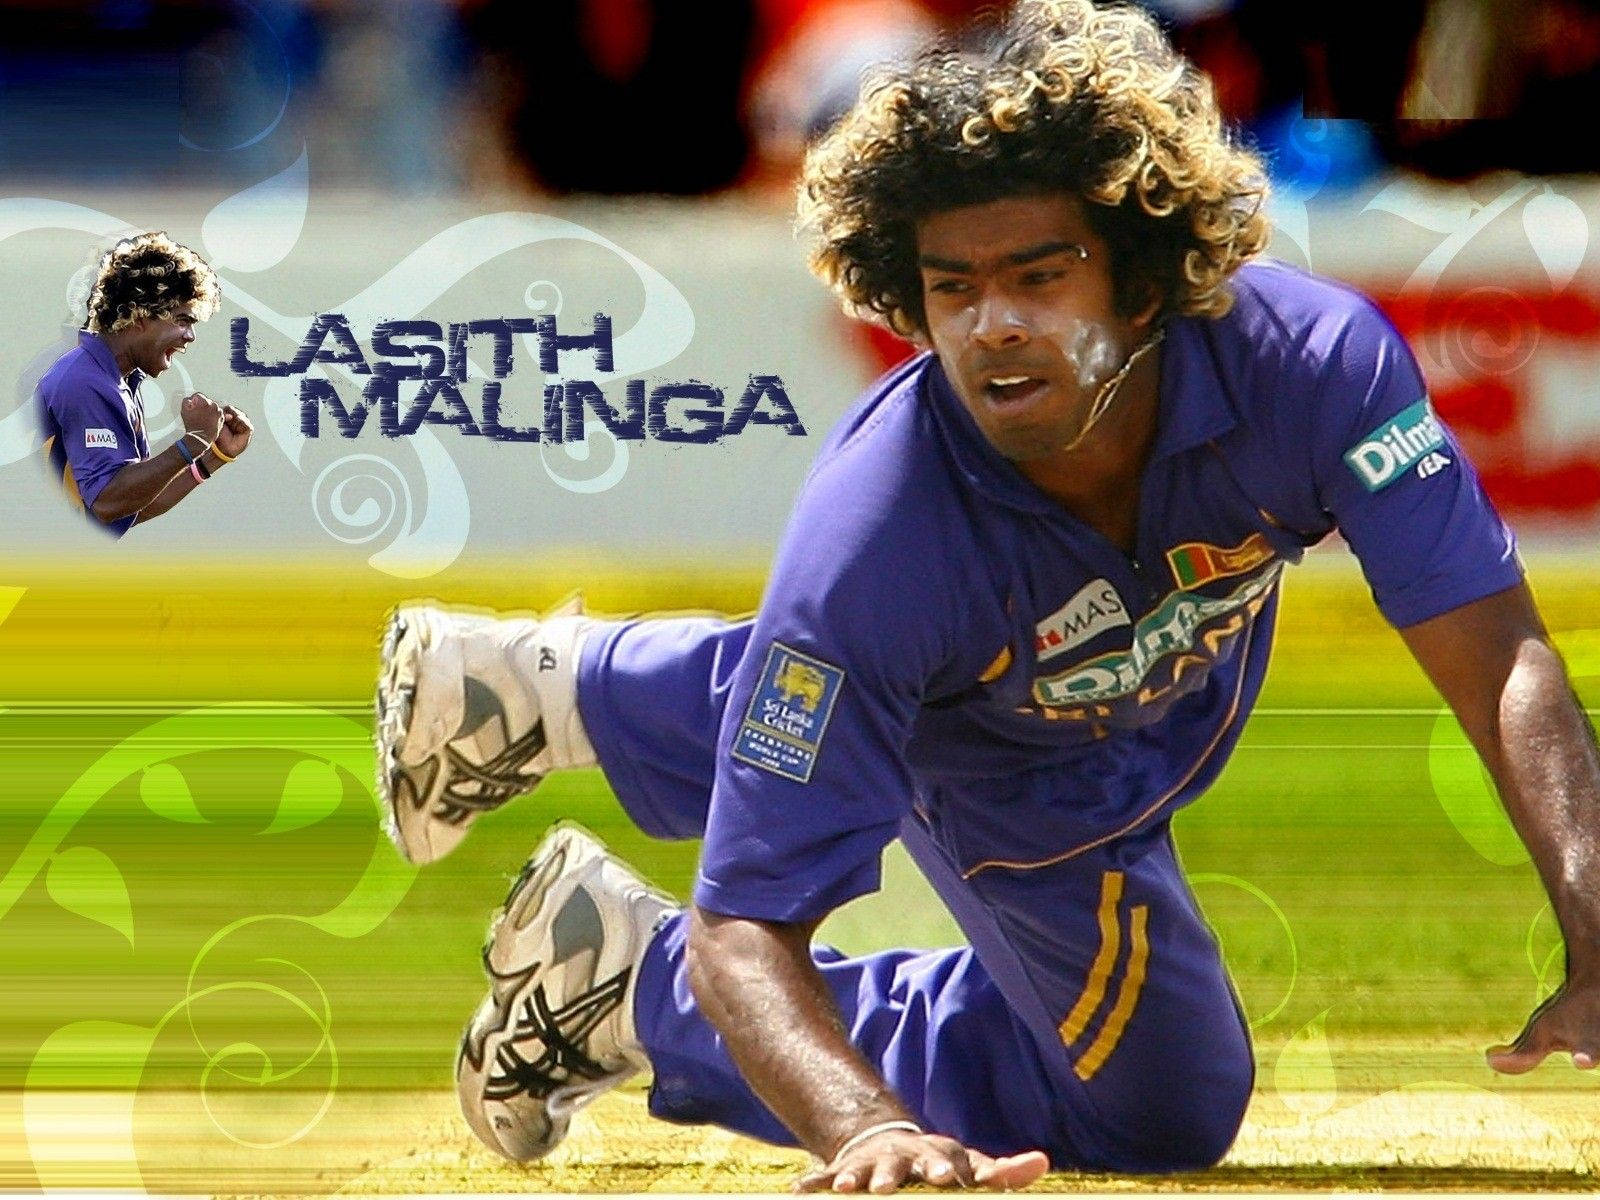 Lasit Malinga Player Sri Lanka Cricket Wallpaper